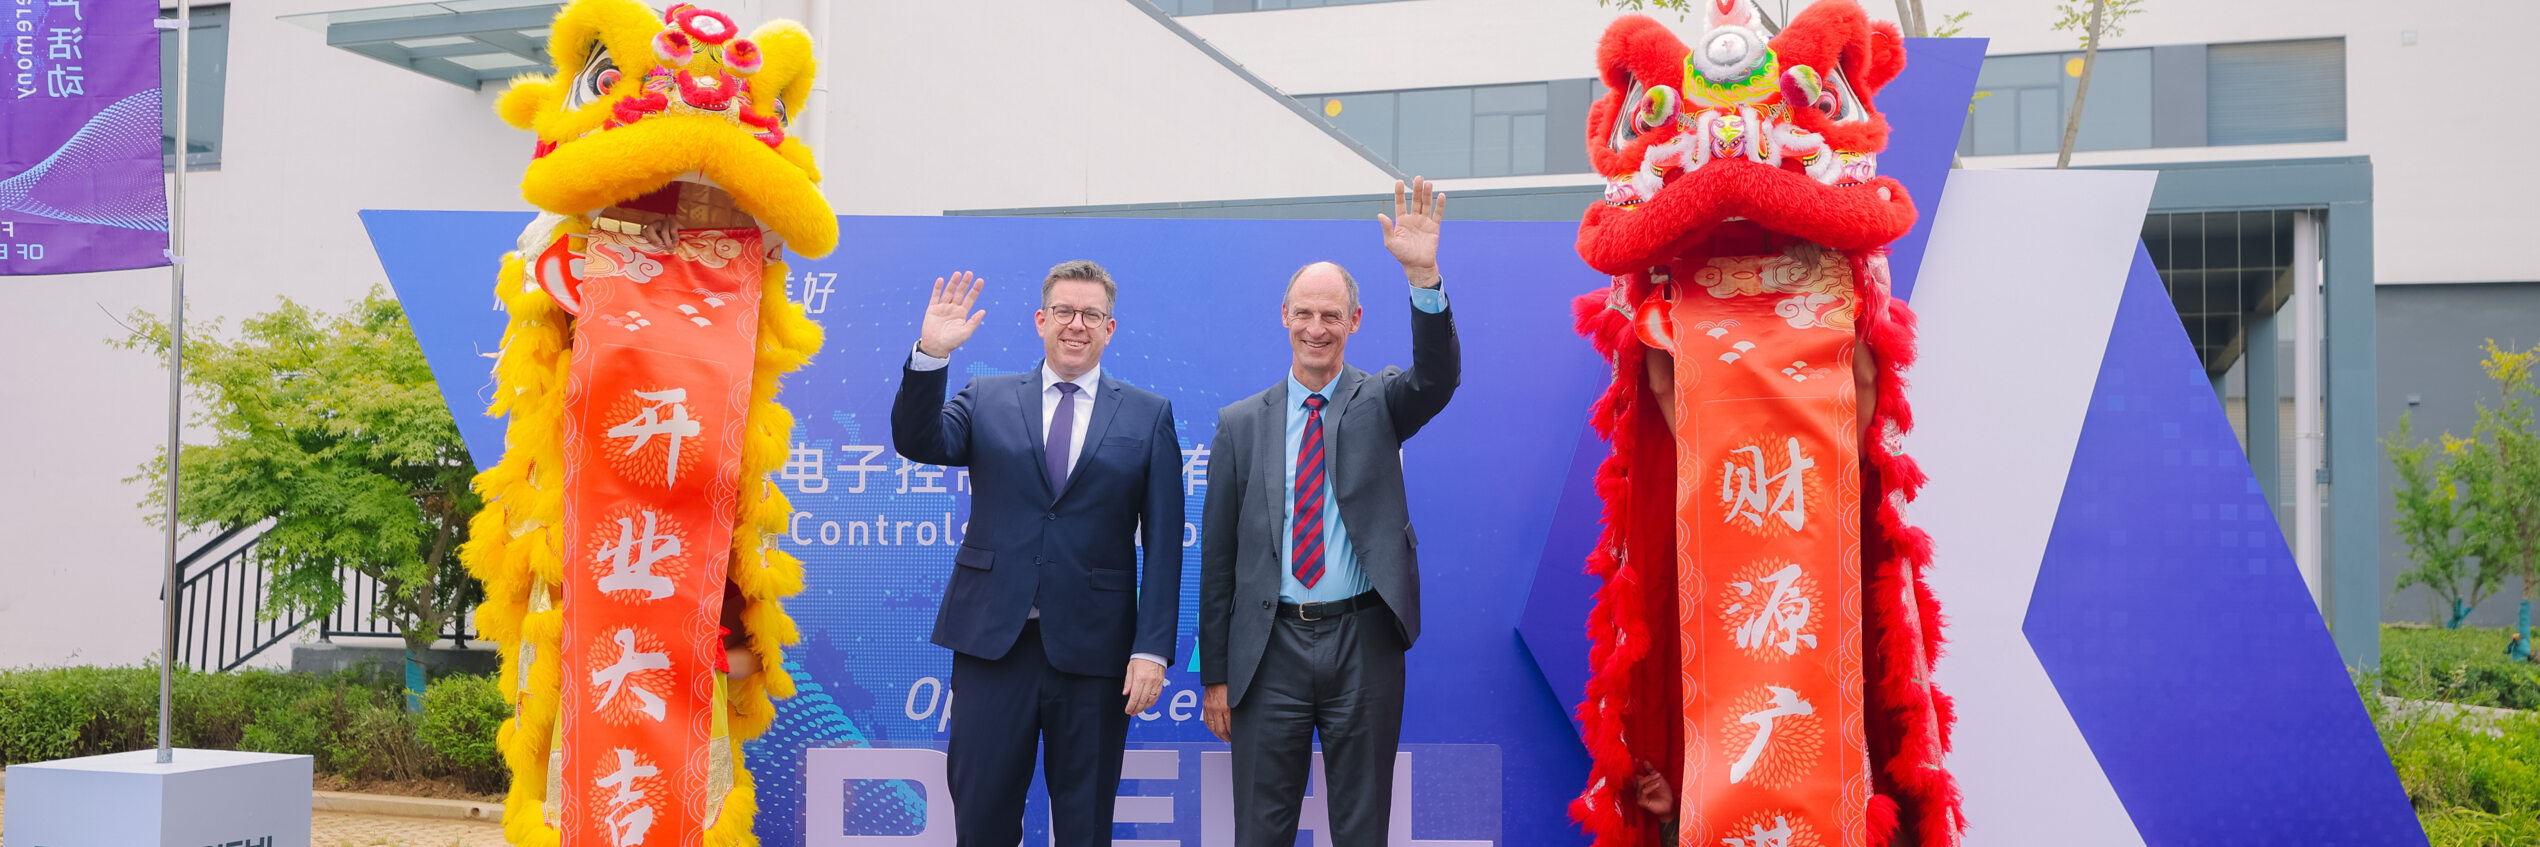 Diehl Controls eröffnet neues Werk in China 